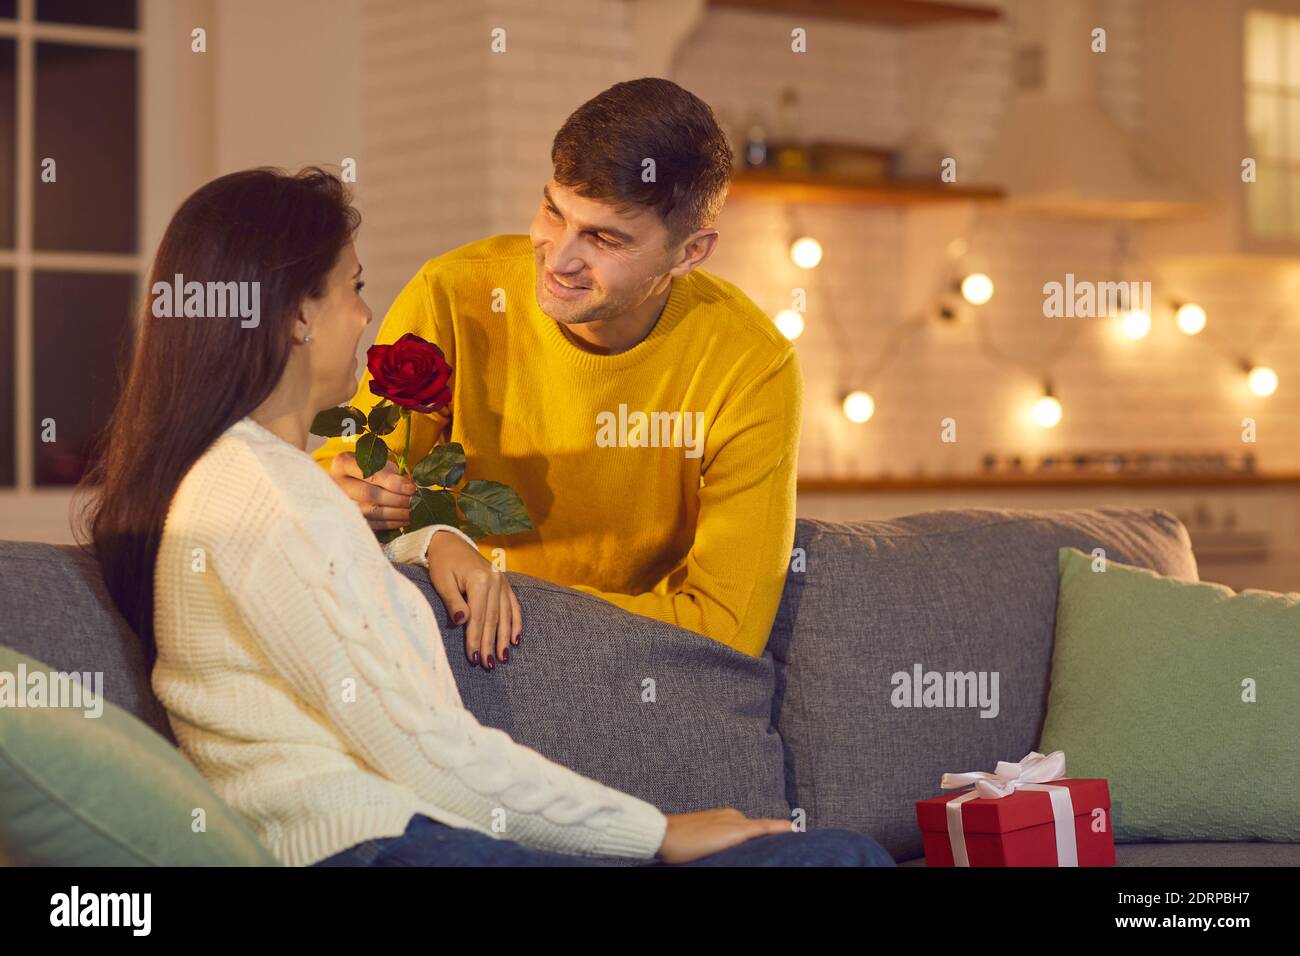 Jeune homme souriant petit ami ou mari lui donnant des fleurs Femme petite amie ou femme pour la Saint Valentin Banque D'Images